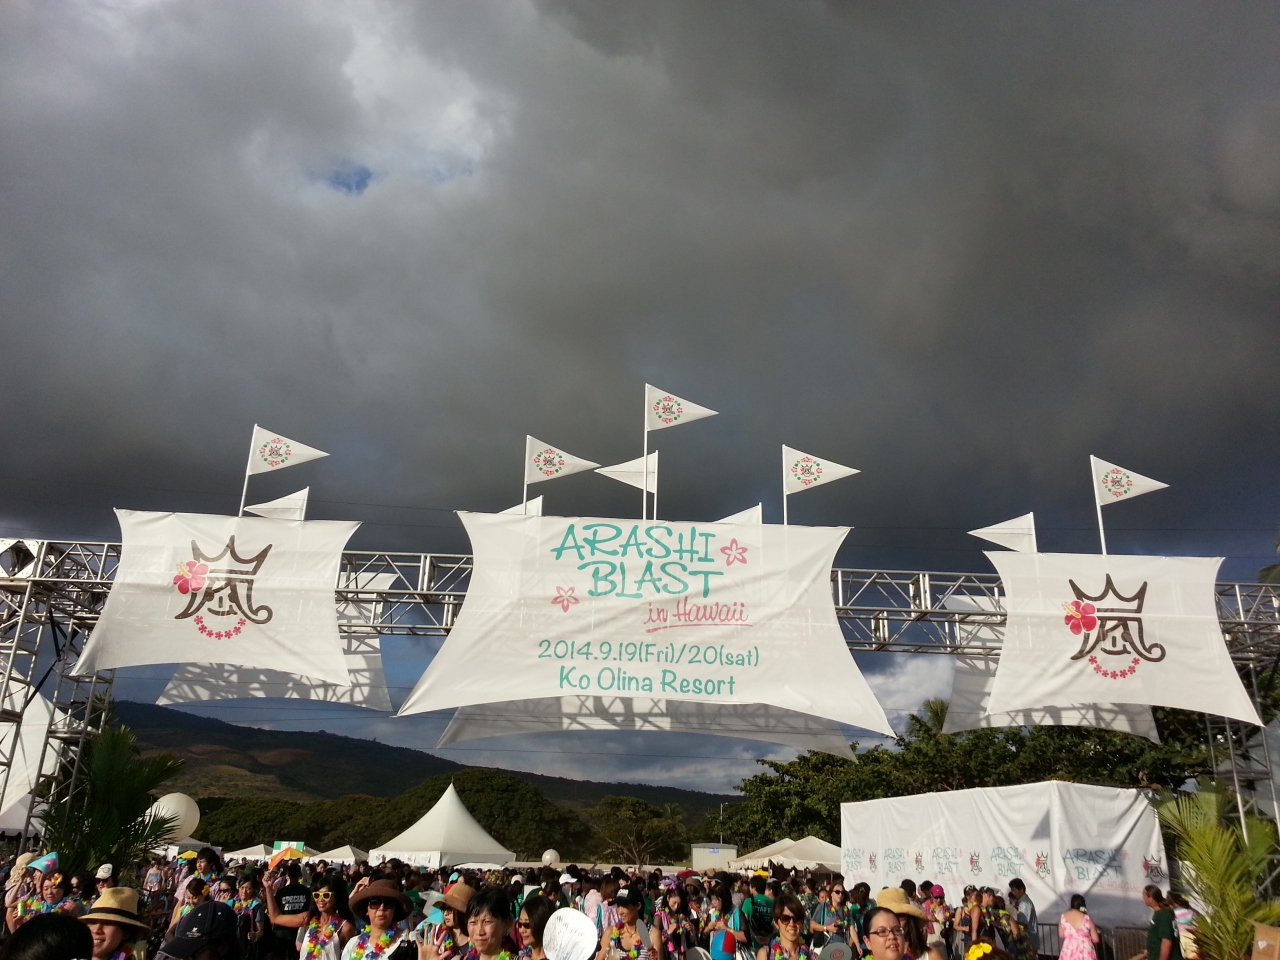 嵐のコンサート Arashi Blast In Hawaii に行ってきました オアフ島 ハワイ の旅行記 ブログ By Cabbageさん フォートラベル